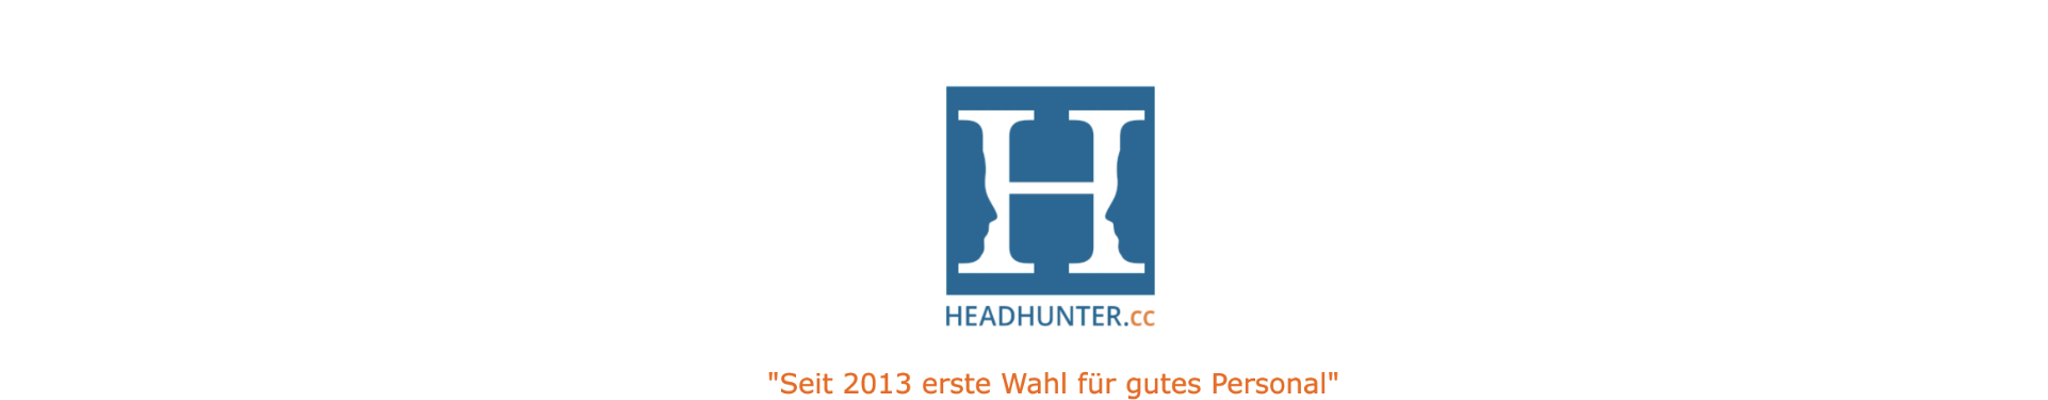 headhunter-cc